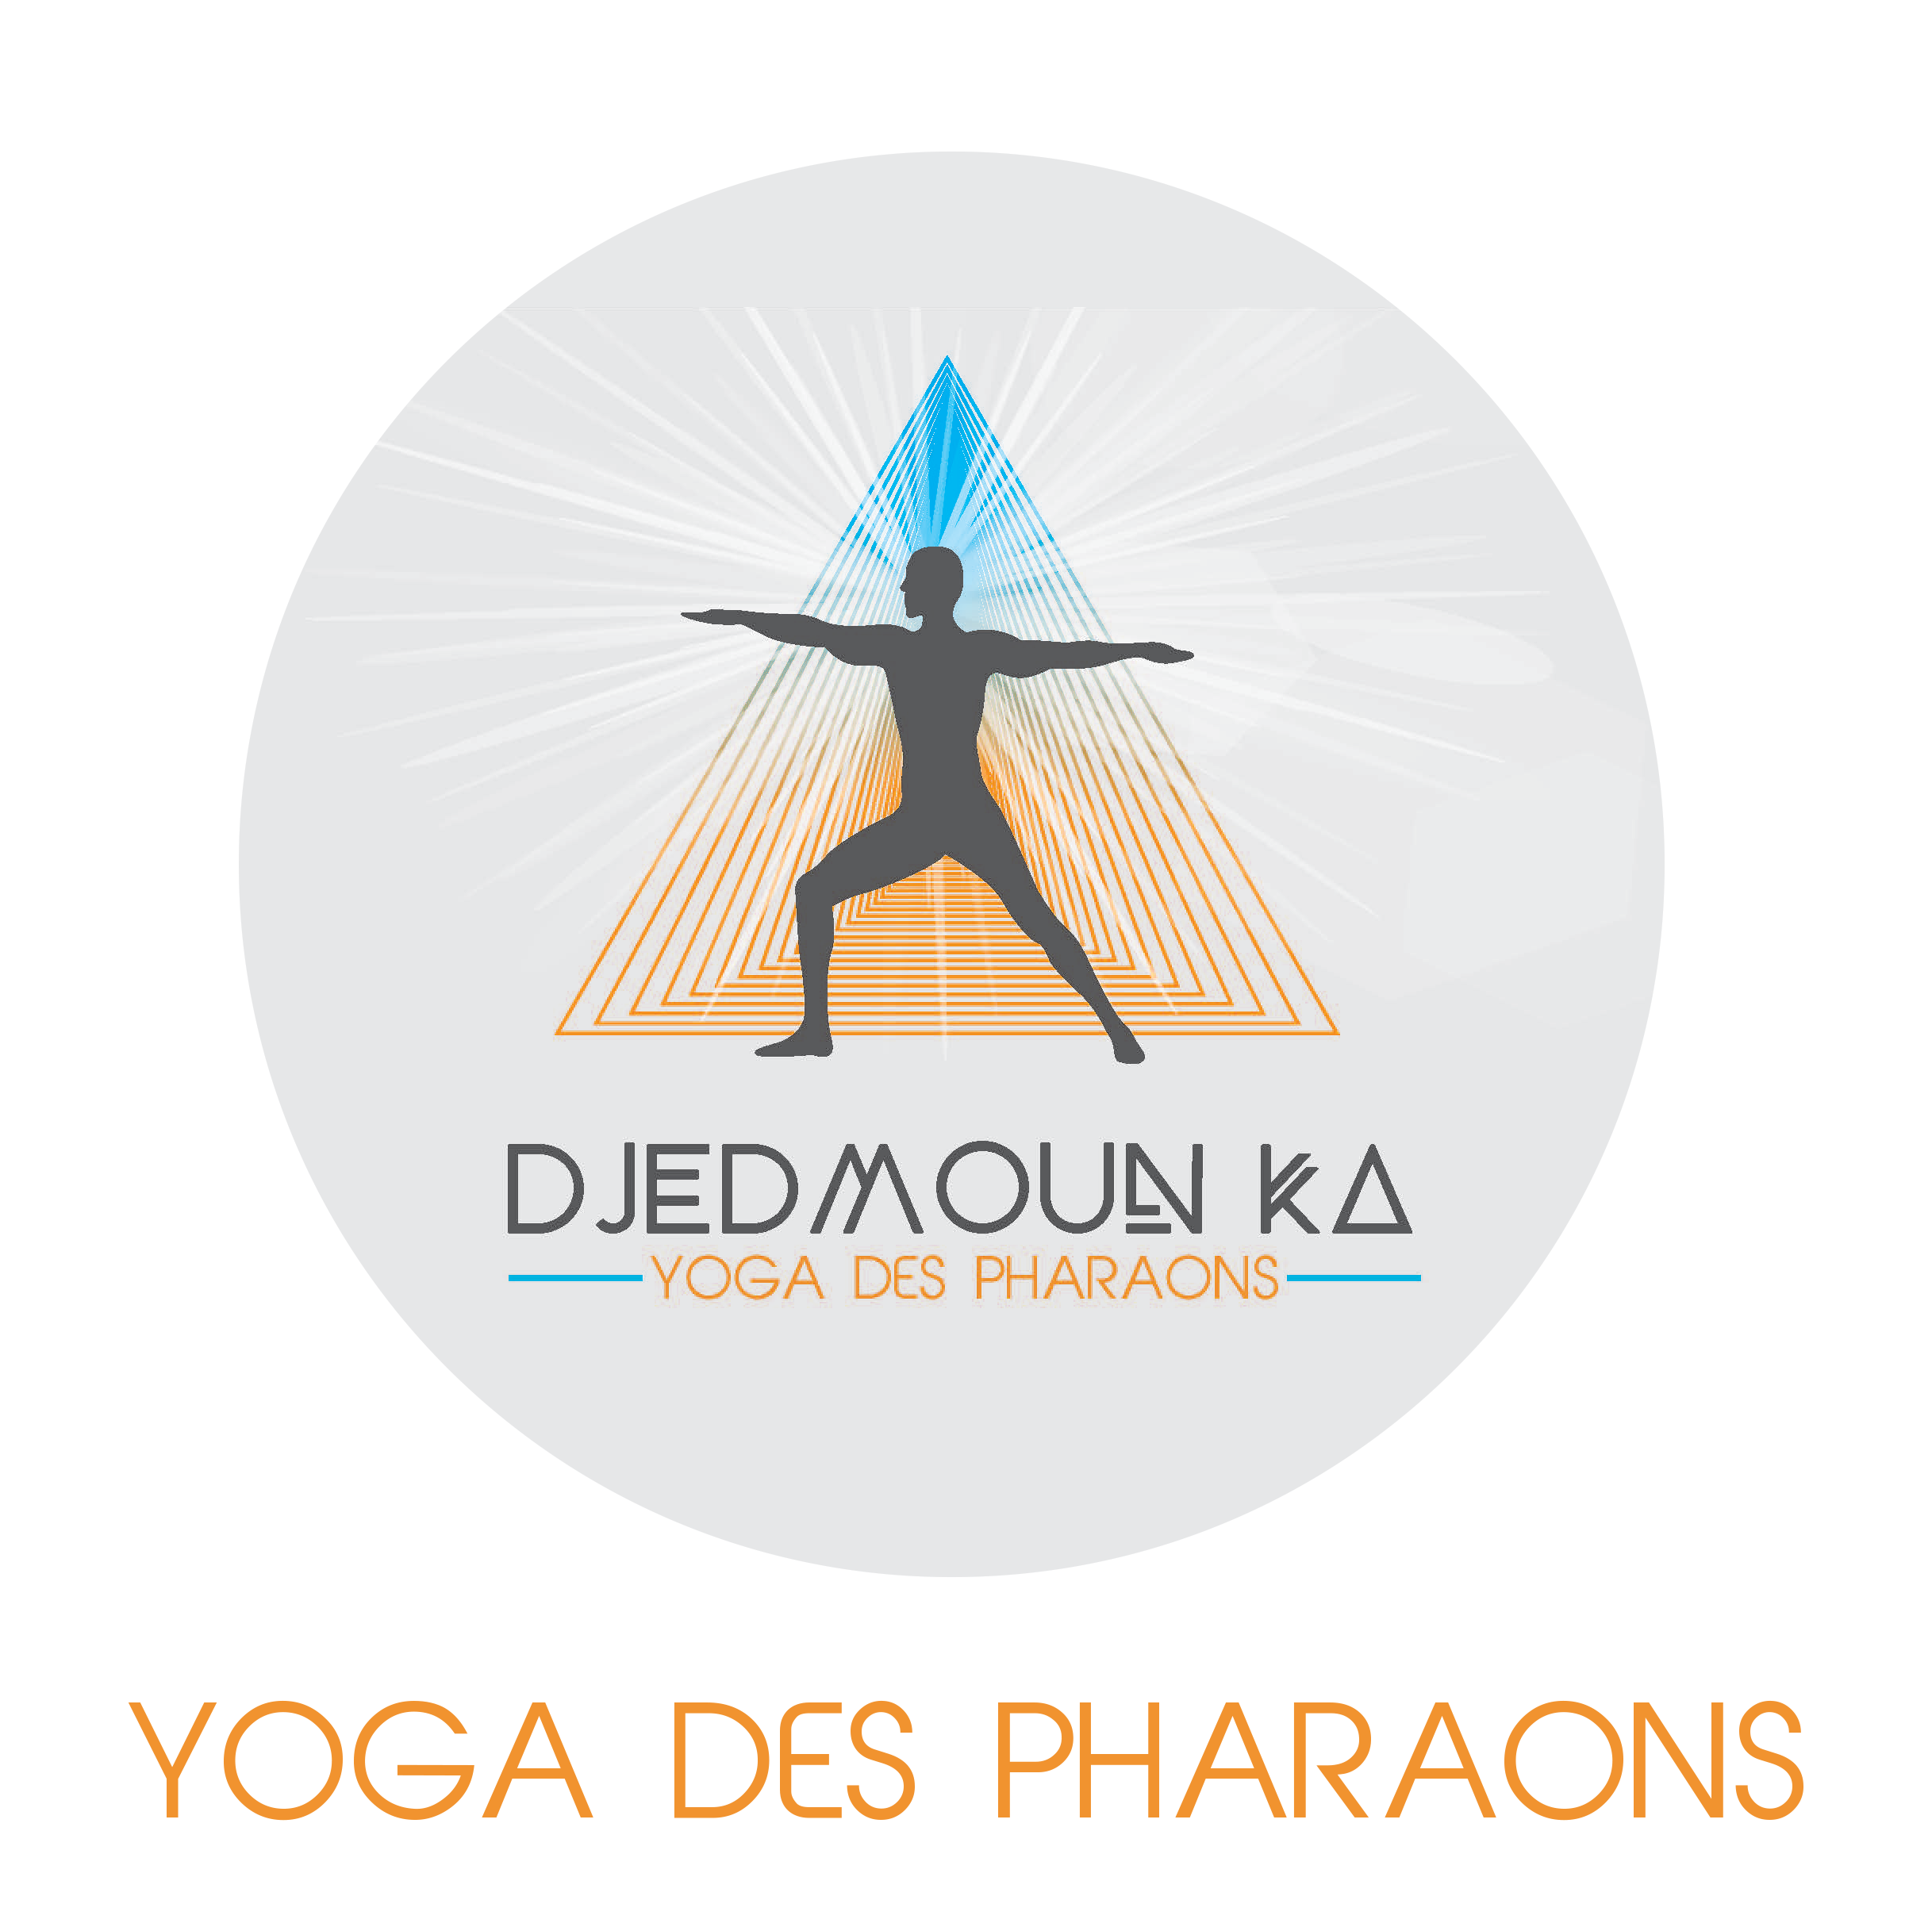 djedmounka yoga